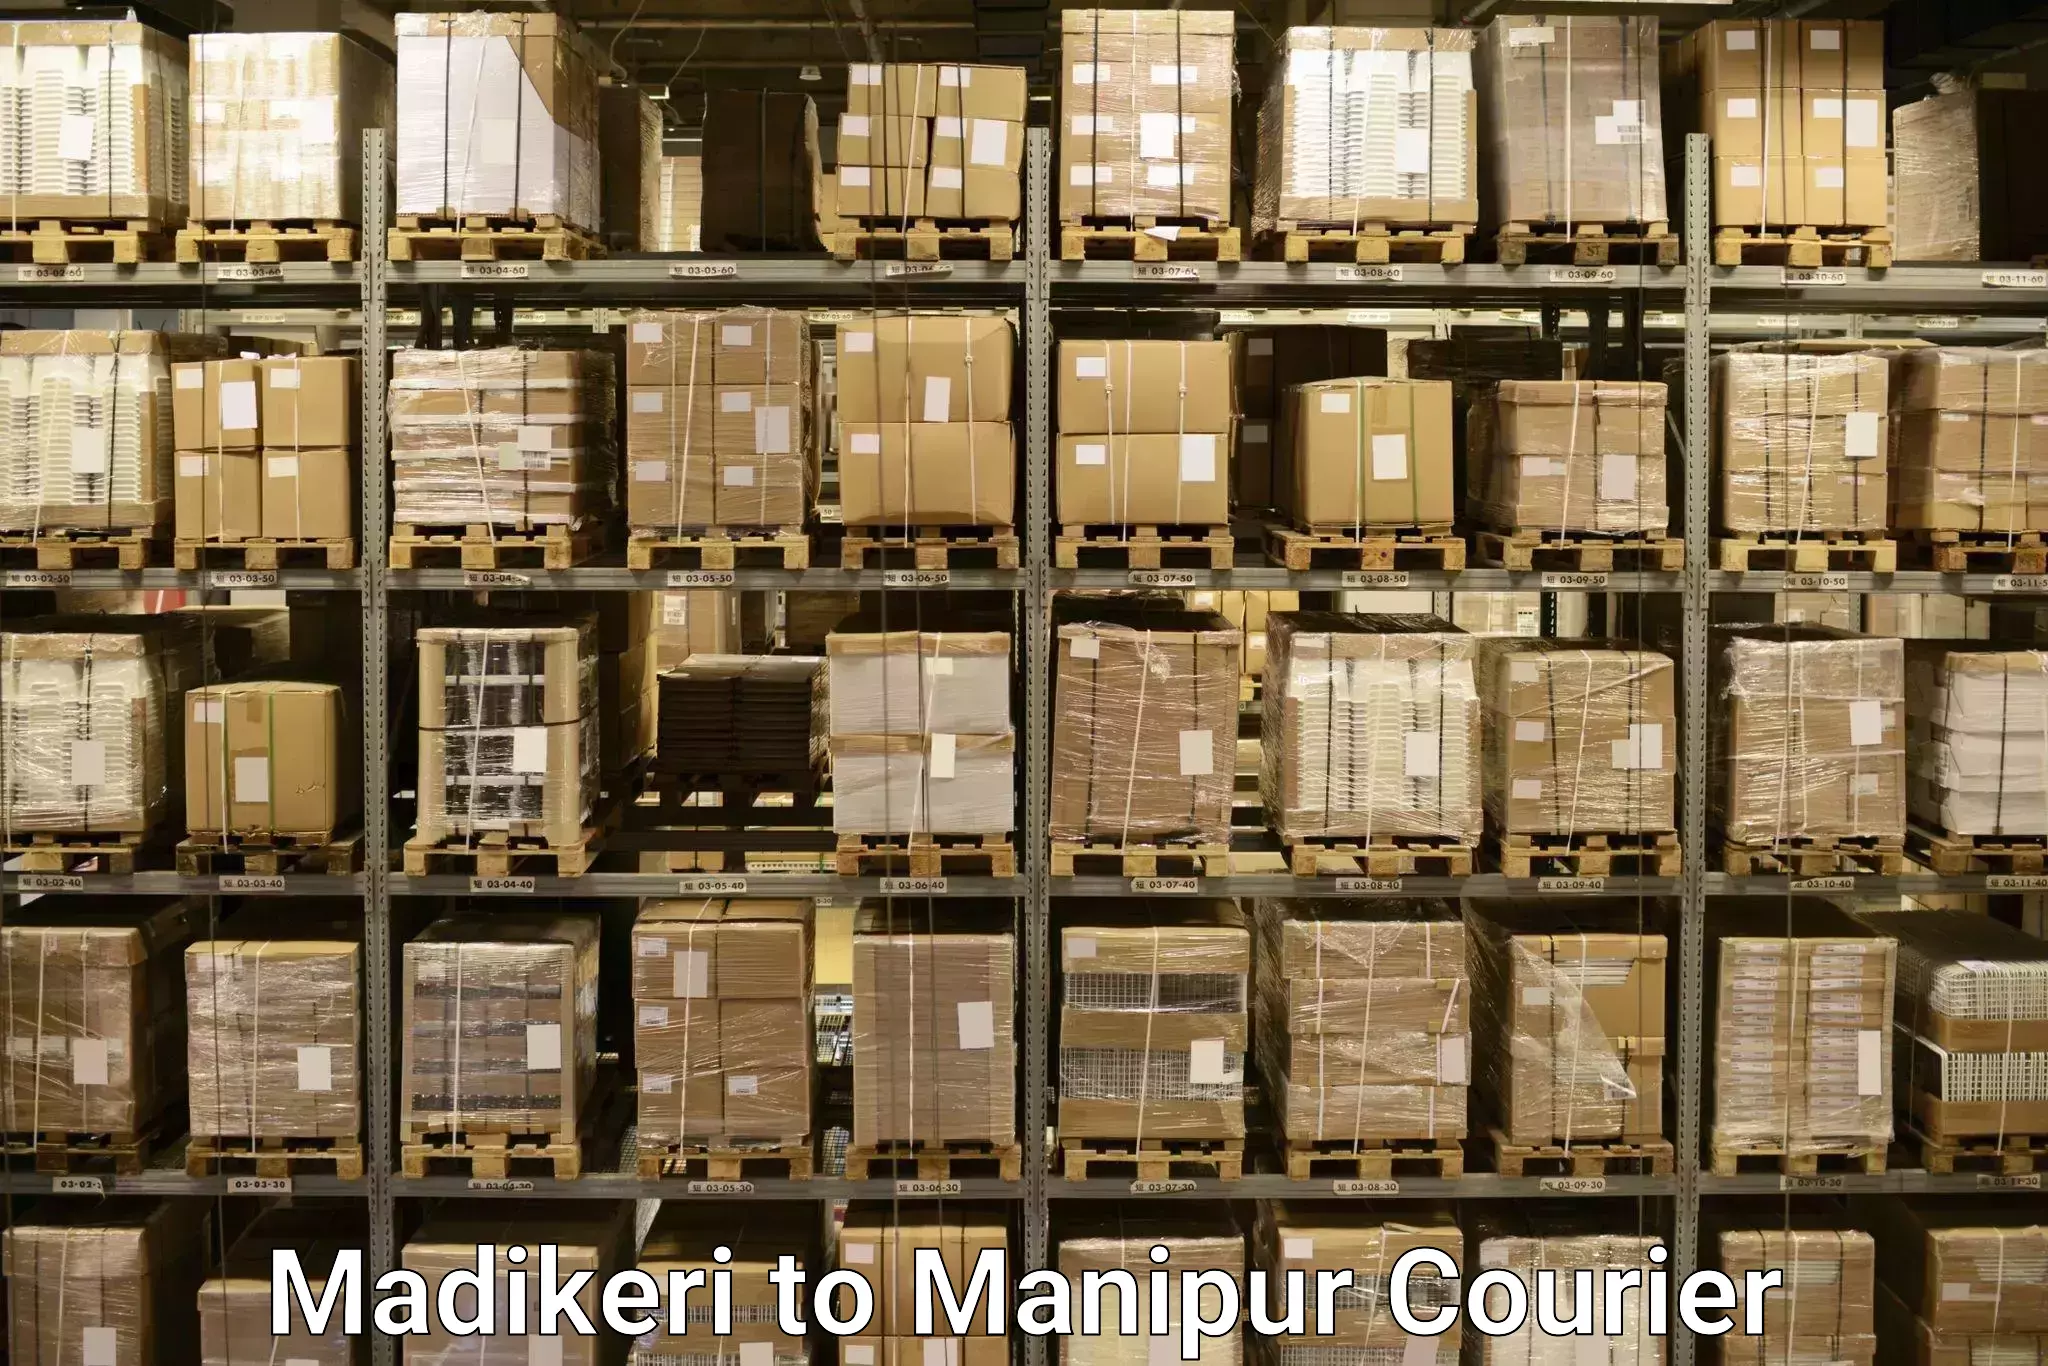 Baggage transport technology Madikeri to Manipur